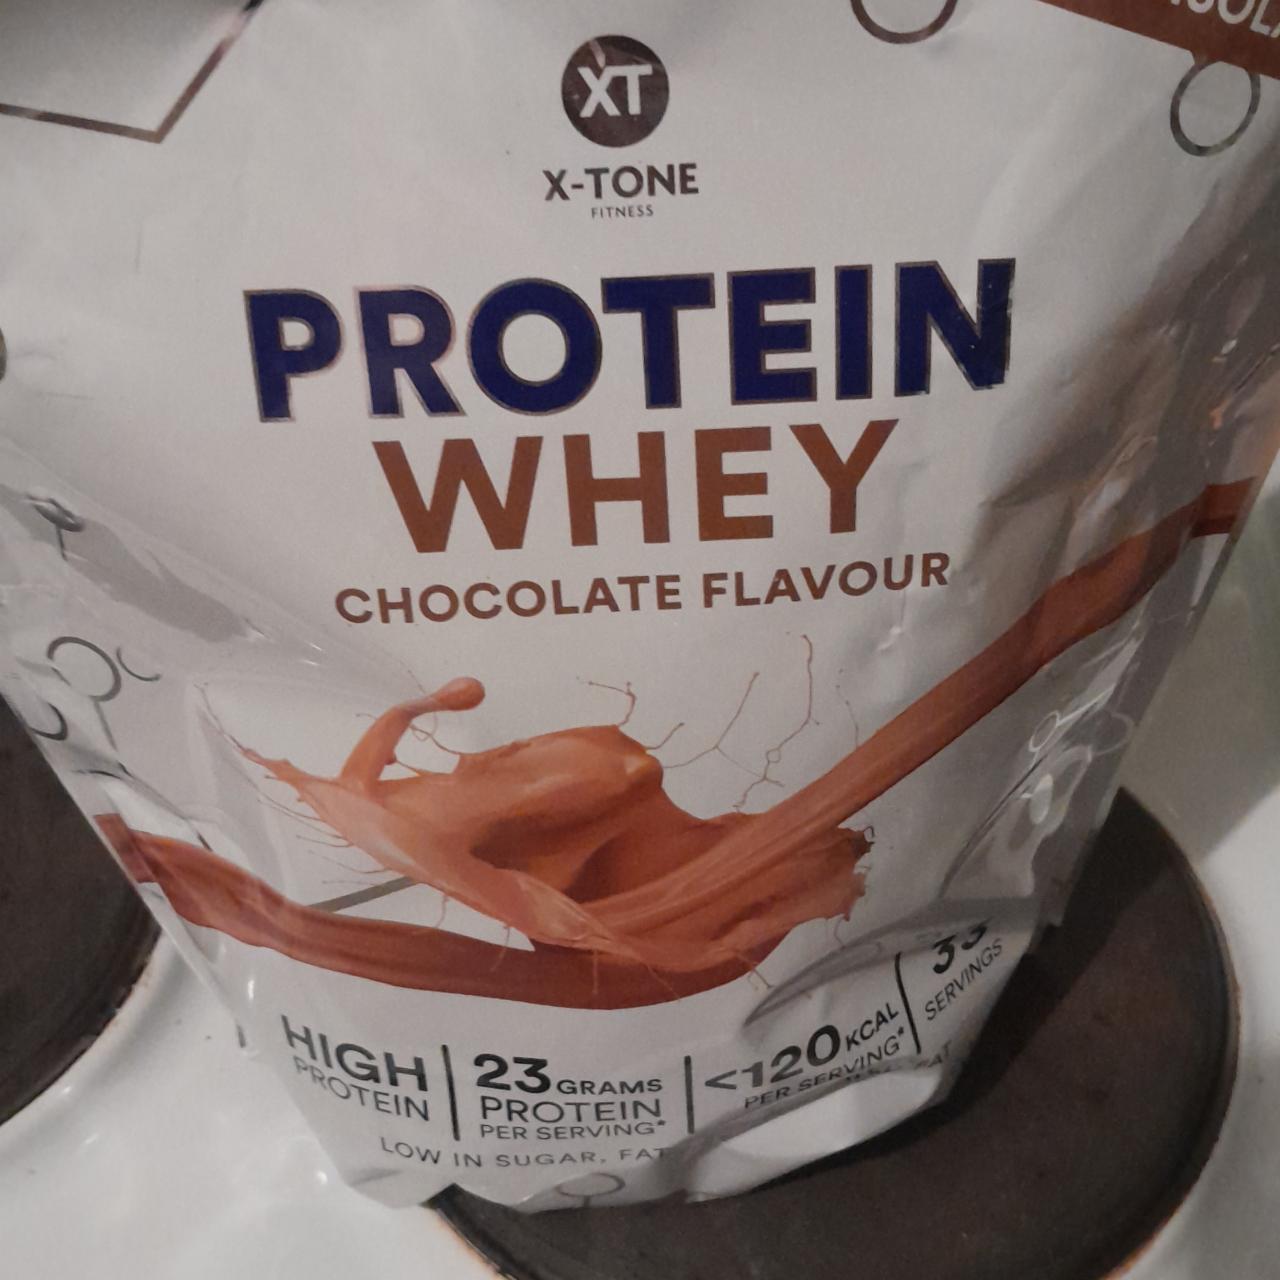 Zdjęcia - protein whey chocolate flavour X-tone